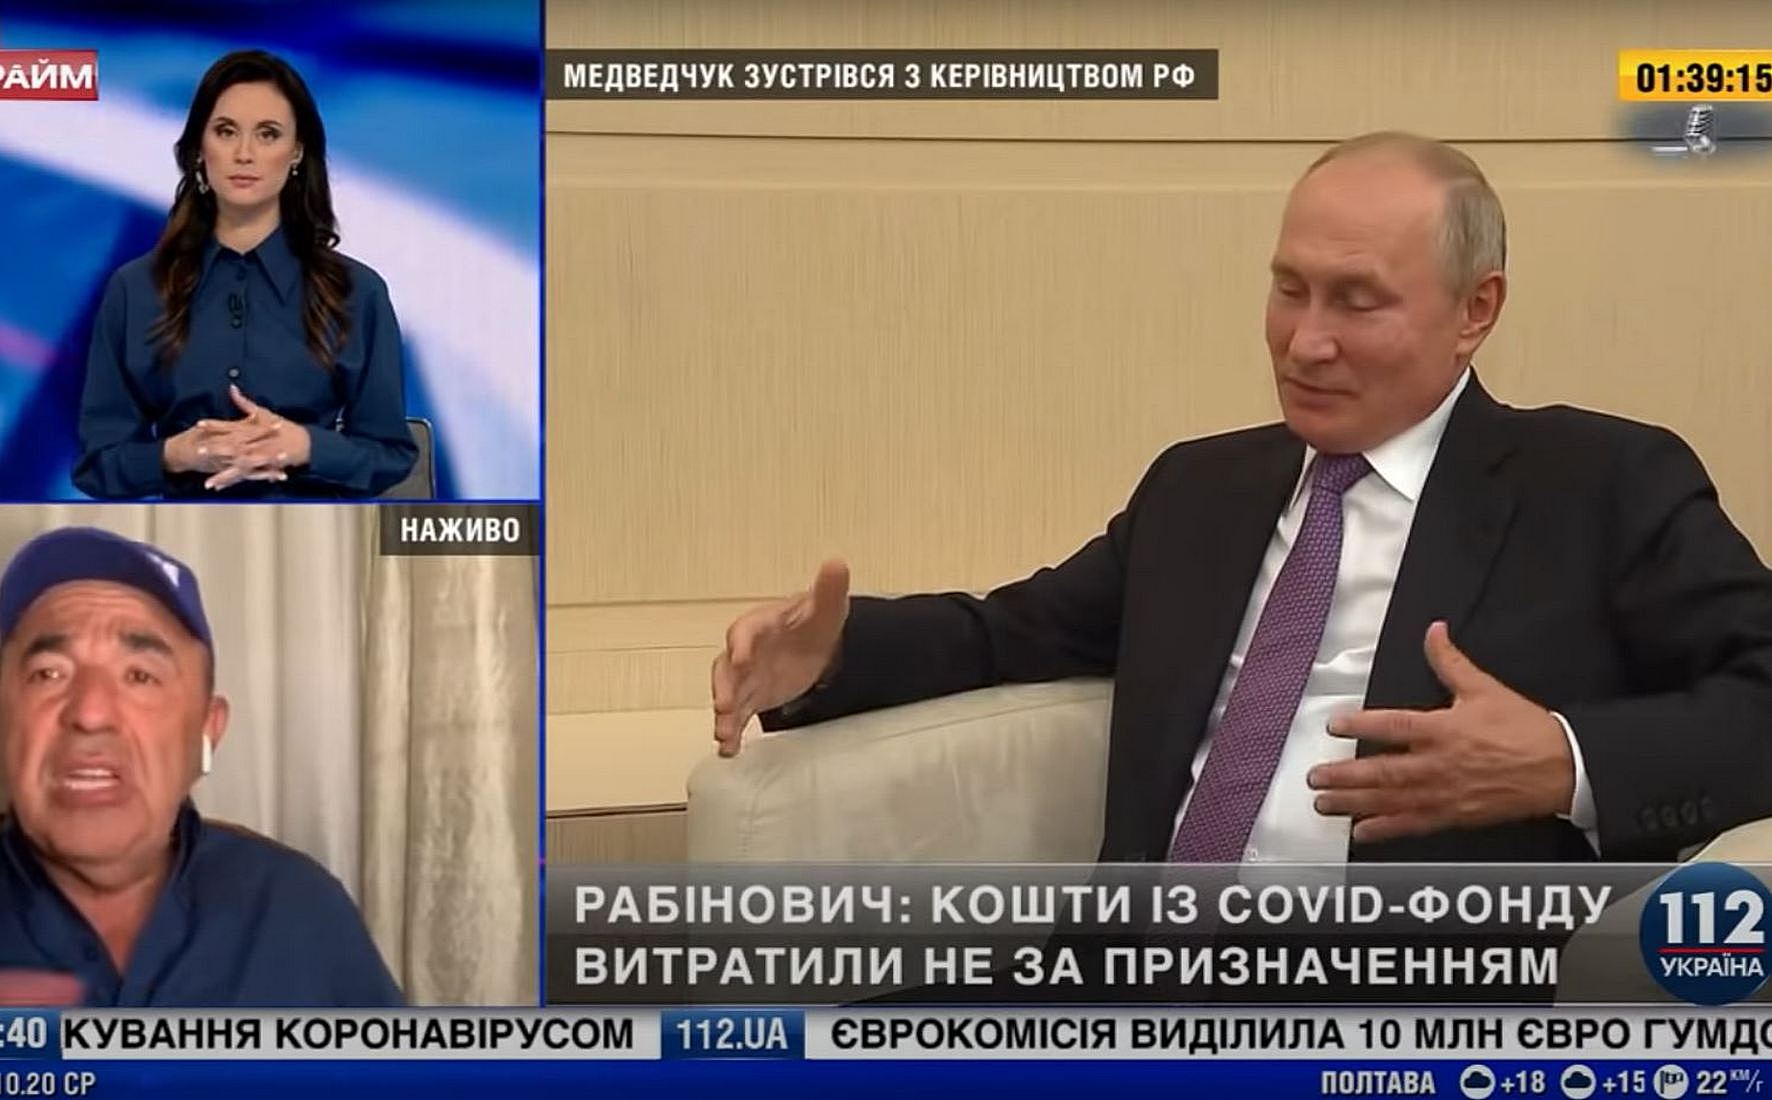 Нацрада внепланово проверит каналы, слишком много показывавшие Путина